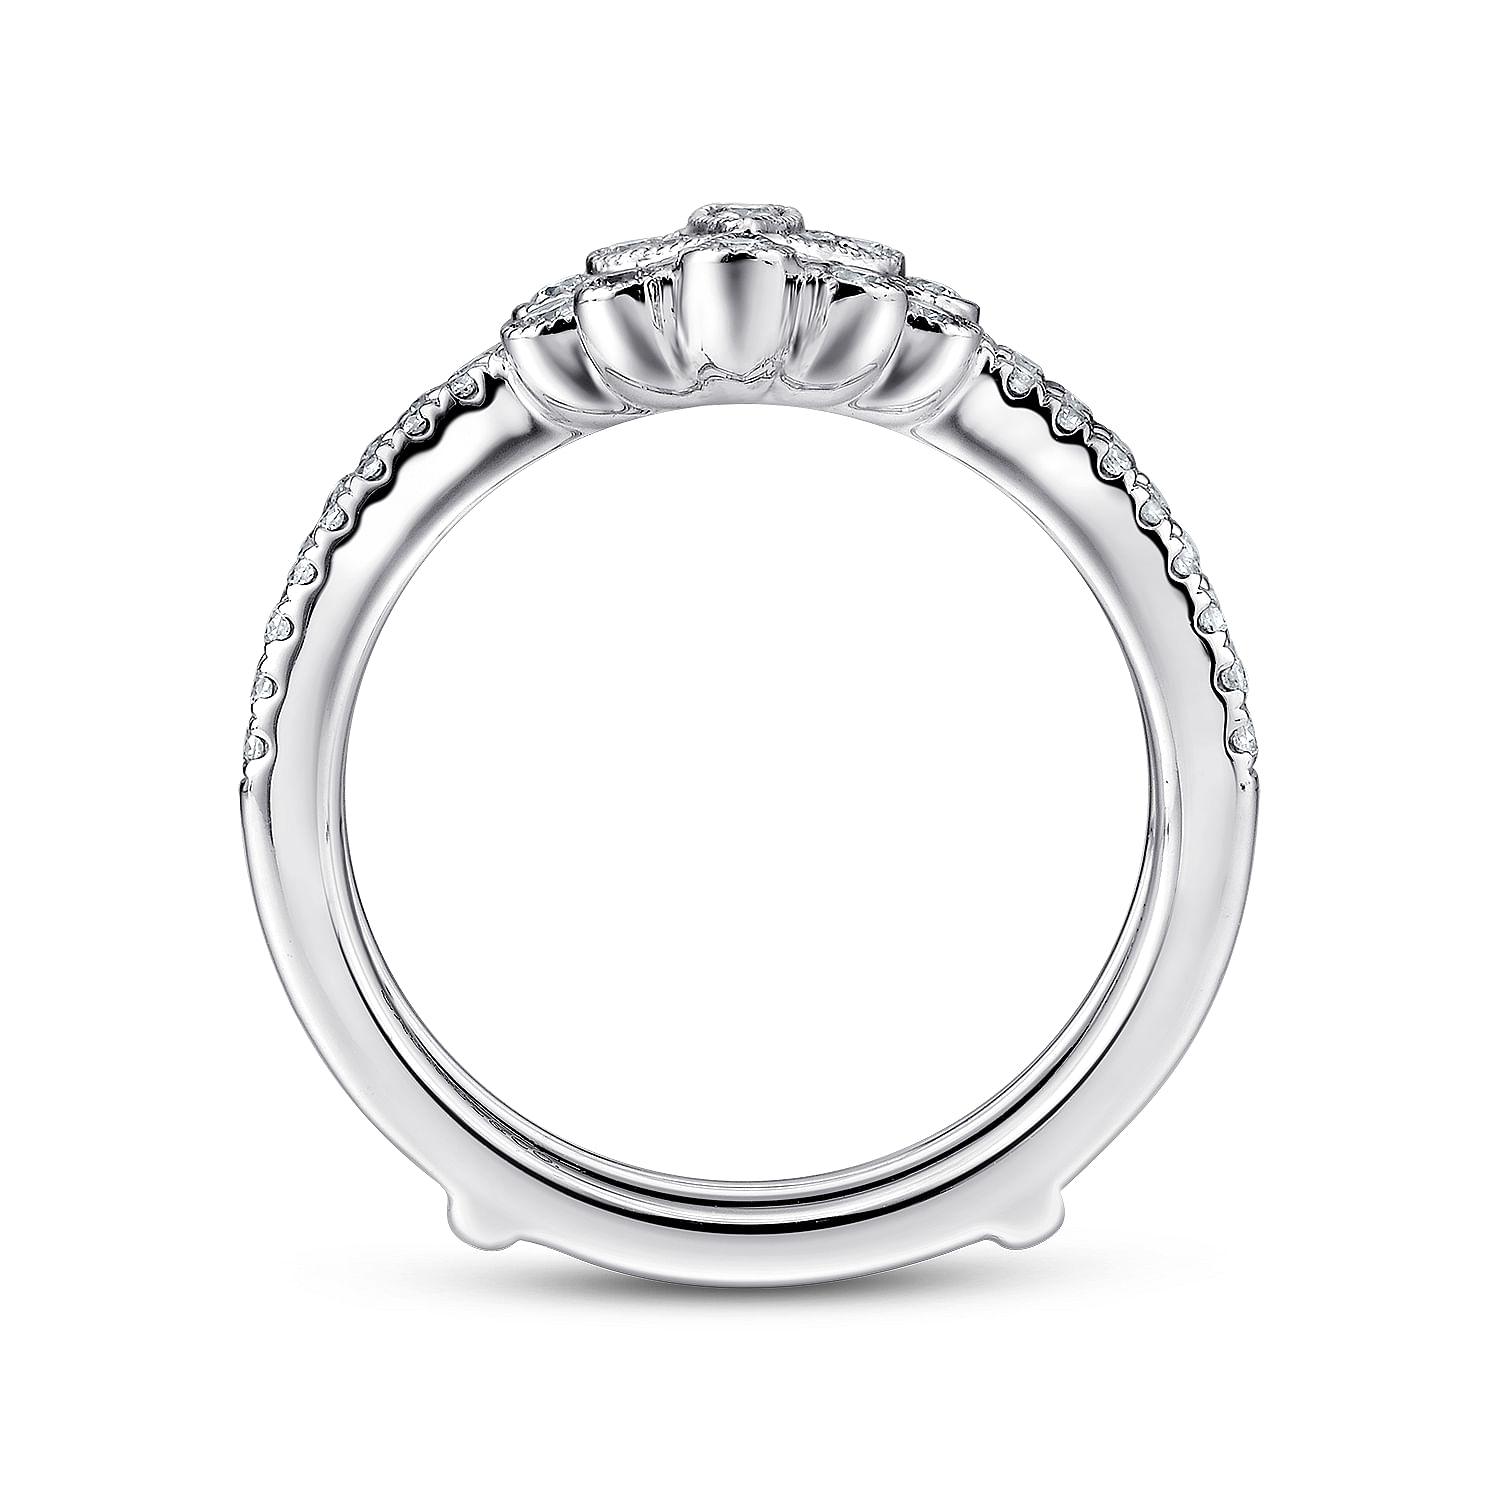 14K White Gold Floral Diamond Ring Enhancer